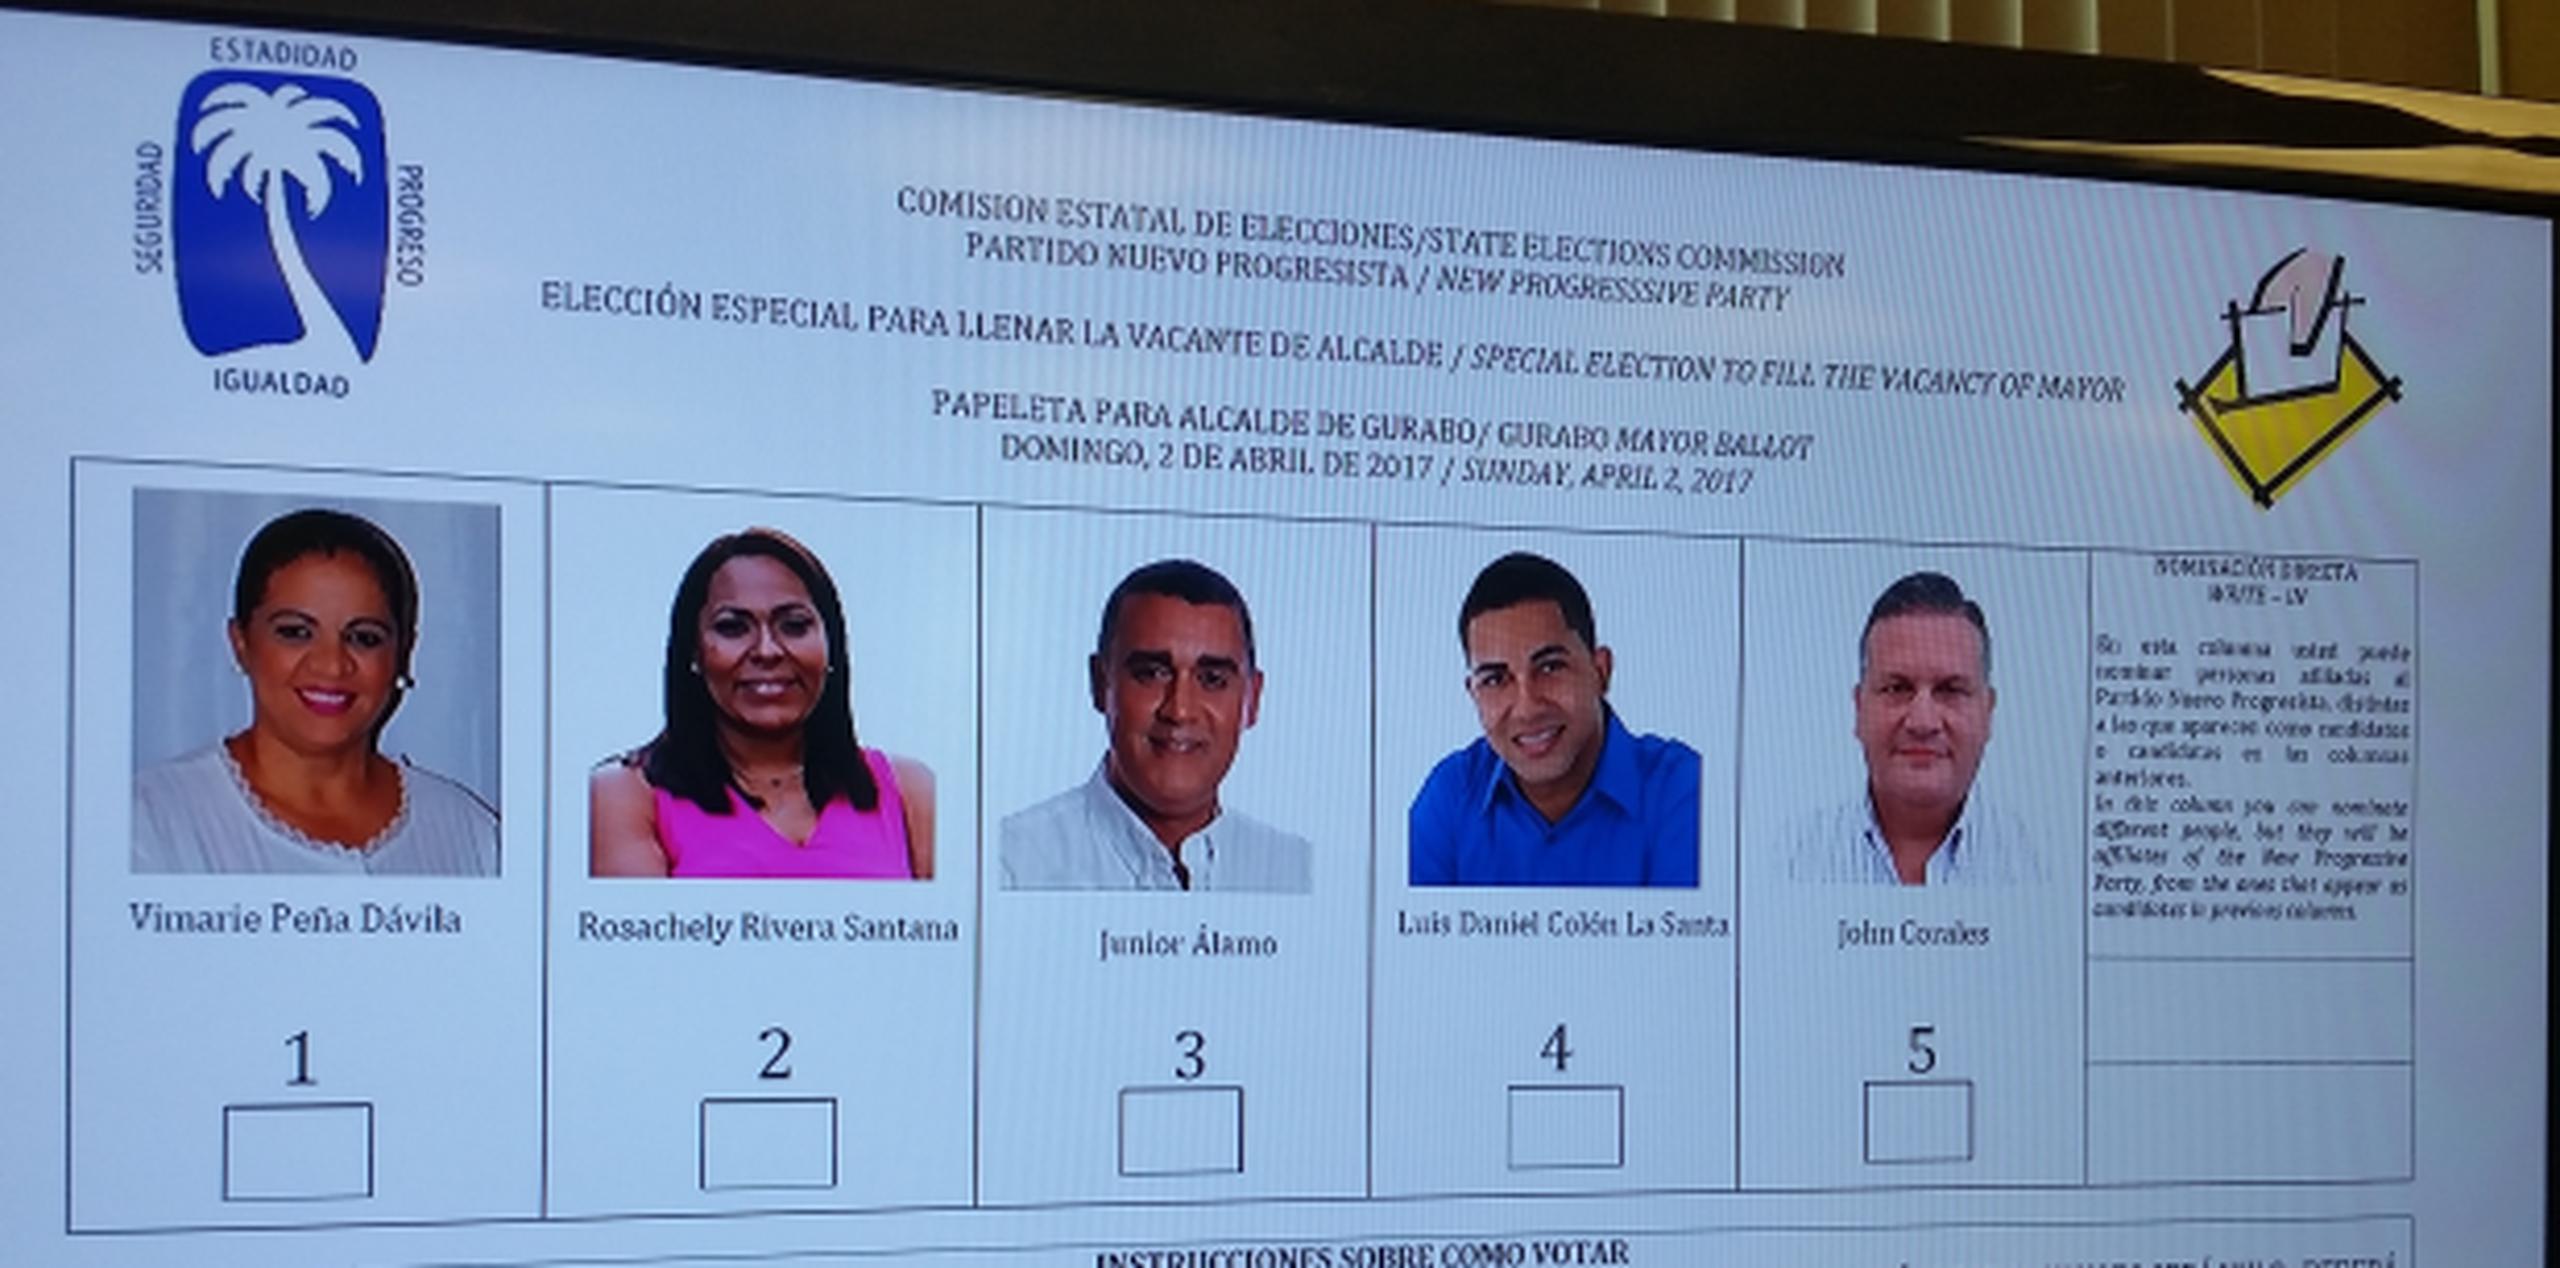 El Tribunal Supremo de Puerto Rico falló a favor del PNP, dando paso a que sea esa colectividad la que celebre la elección para llenar la vacante en la alcaldía. (Suministrada)